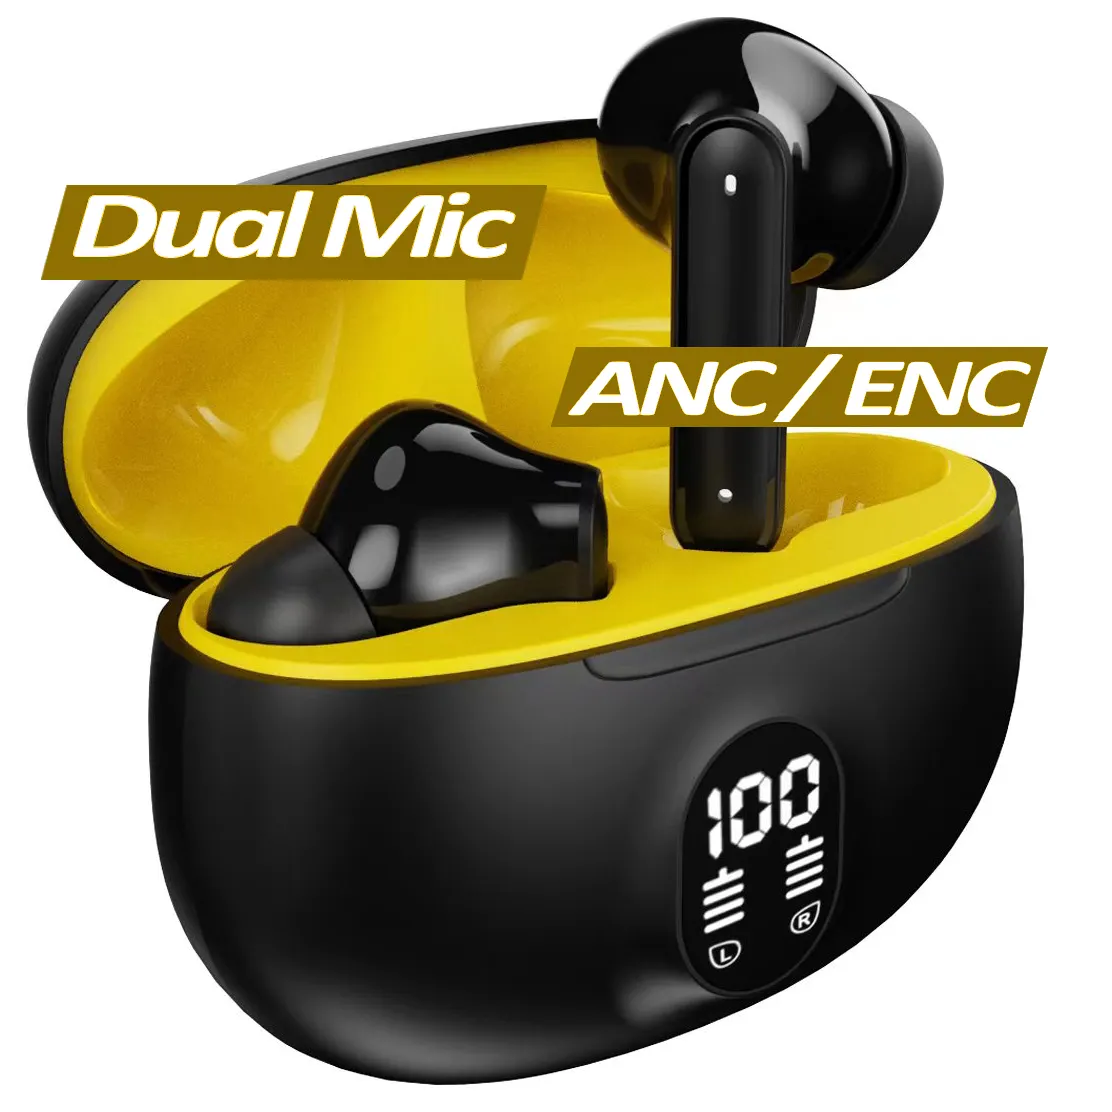 Real Anc Enc Dual Mic Microfoon Stereo Draadloze Oortelefoon Tws Oordopjes Ruisonderdrukking Digitaal Display In Oor Headset Hoofdtelefoon